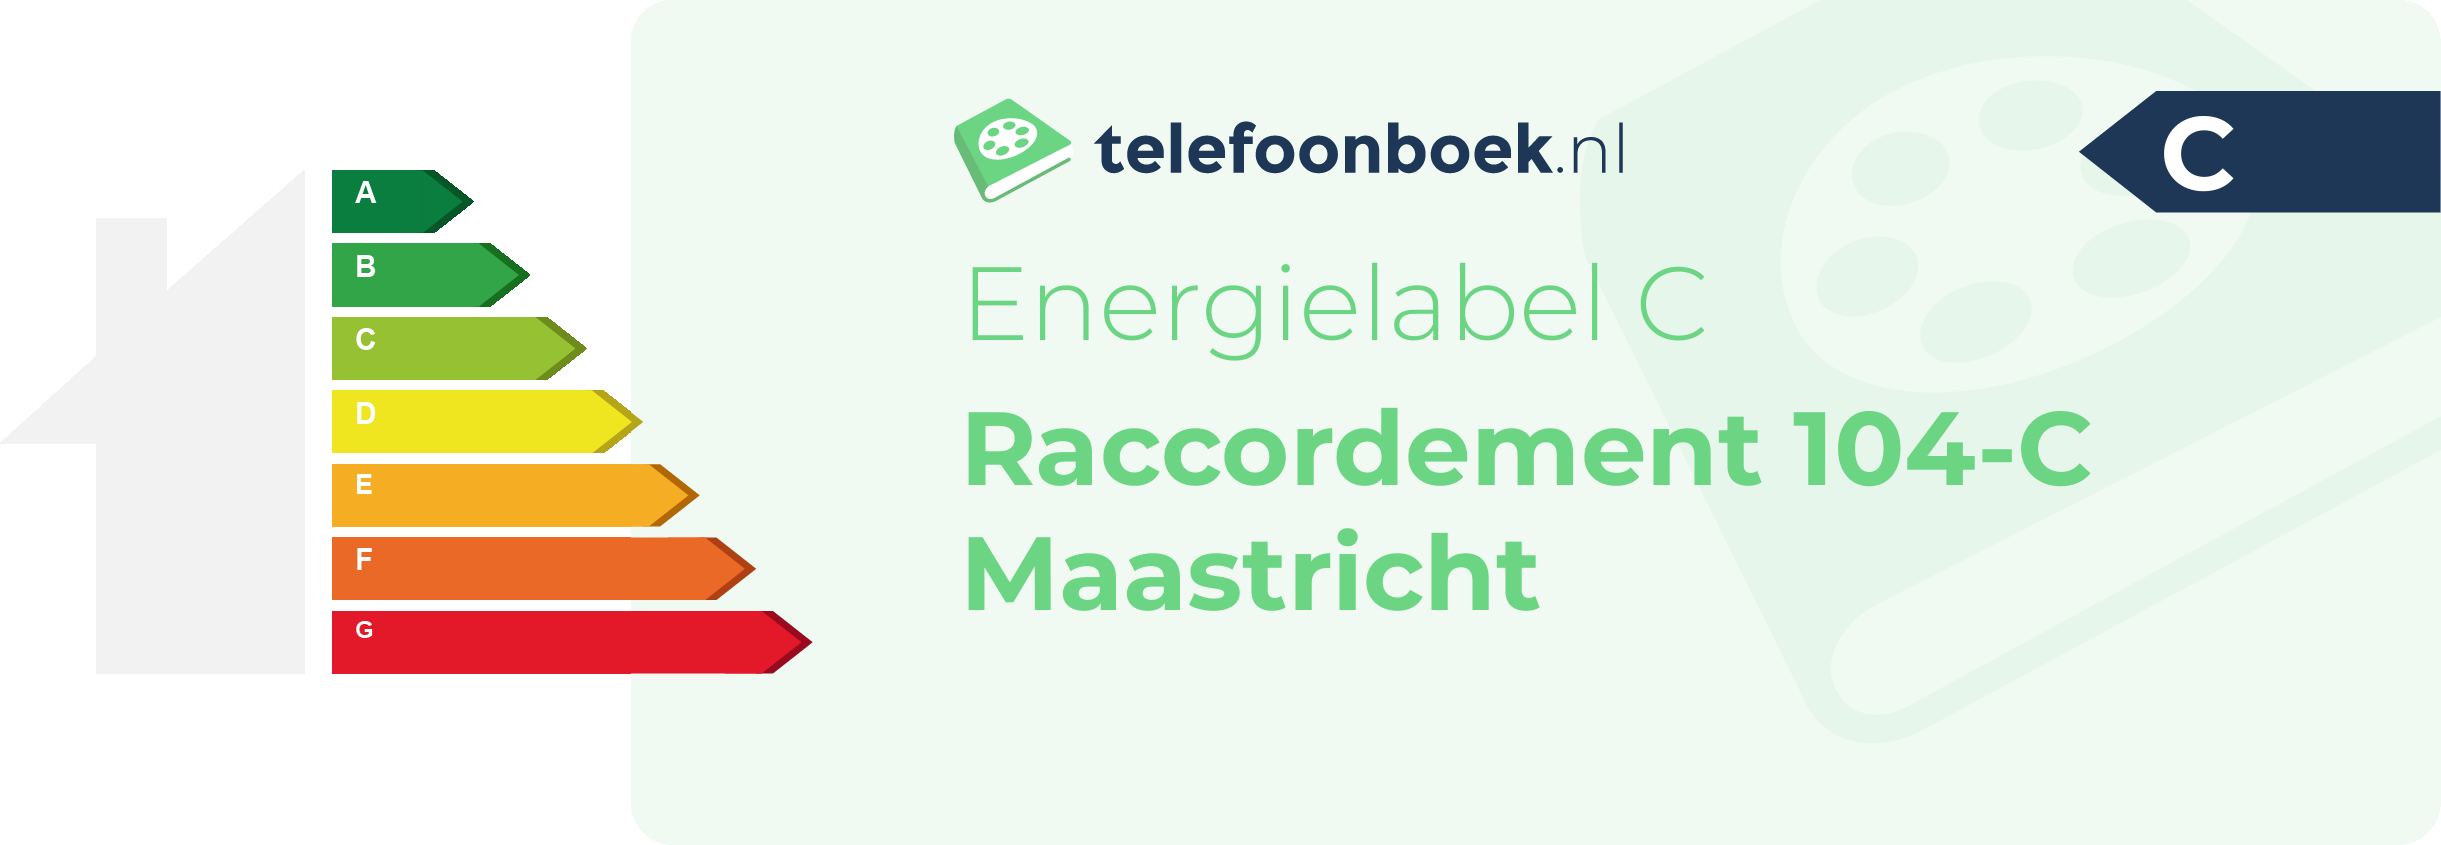 Energielabel Raccordement 104-C Maastricht